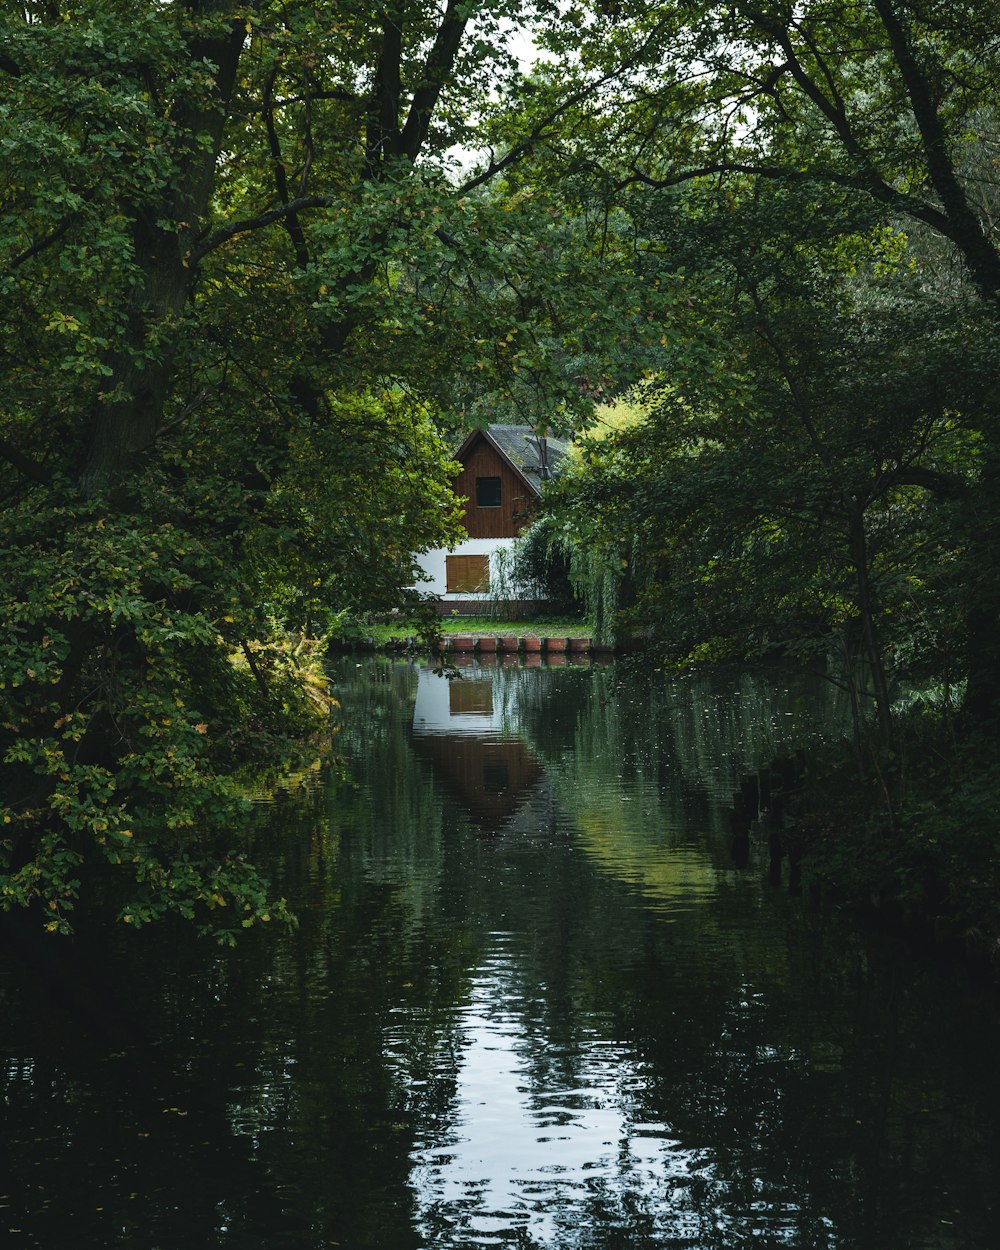 나무들로 둘러싸인 강 위에 앉아 있는 집